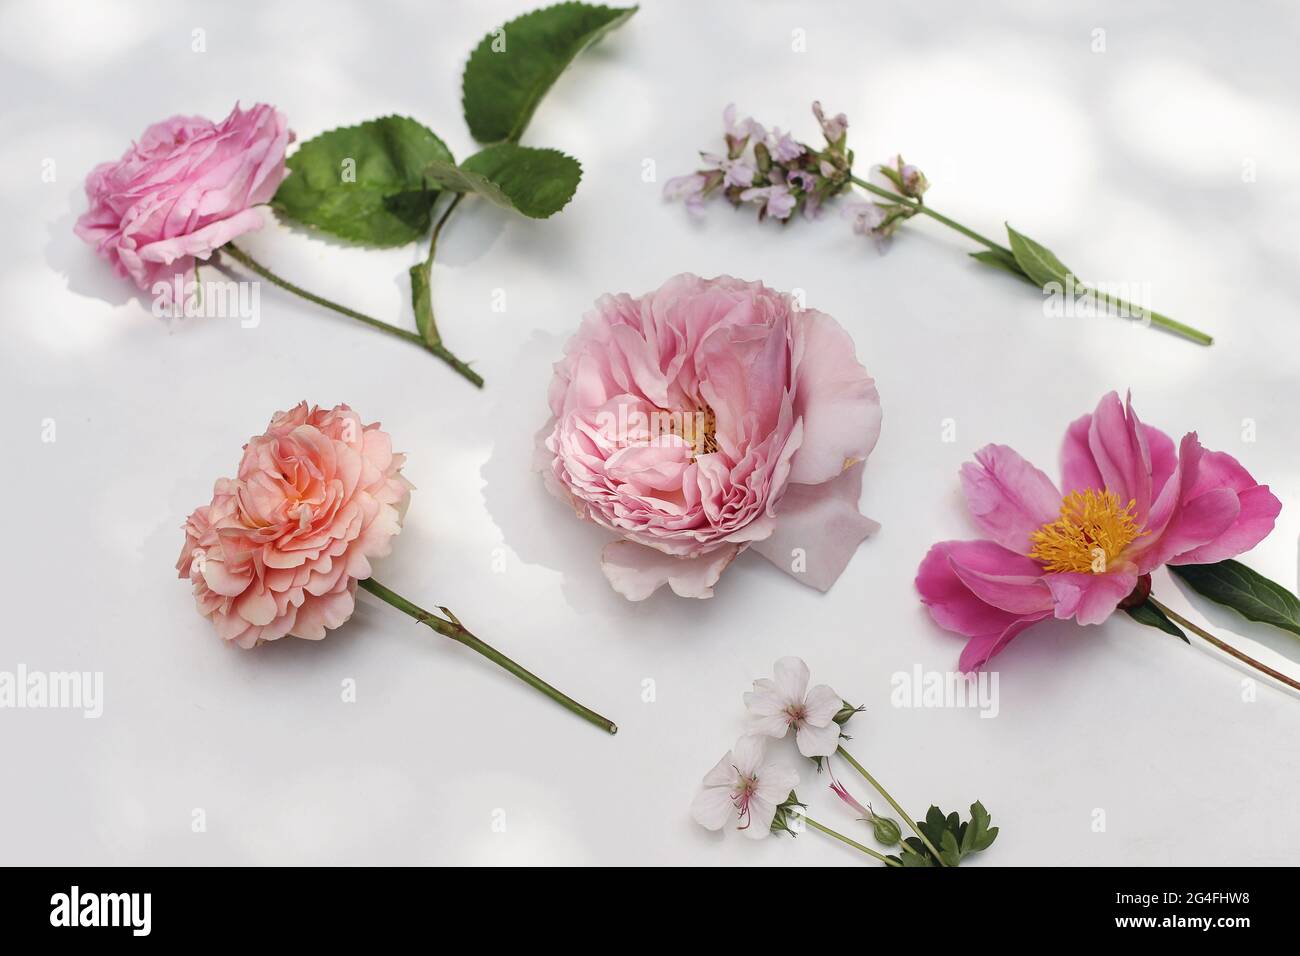 Garten Sommer florale Komposition. Bunte Blumen und Kräuter isoliert auf weißem Tischhintergrund im Sonnenlicht. Englische Rosen, Salbei, Pfingstrose und Geranie Stockfoto